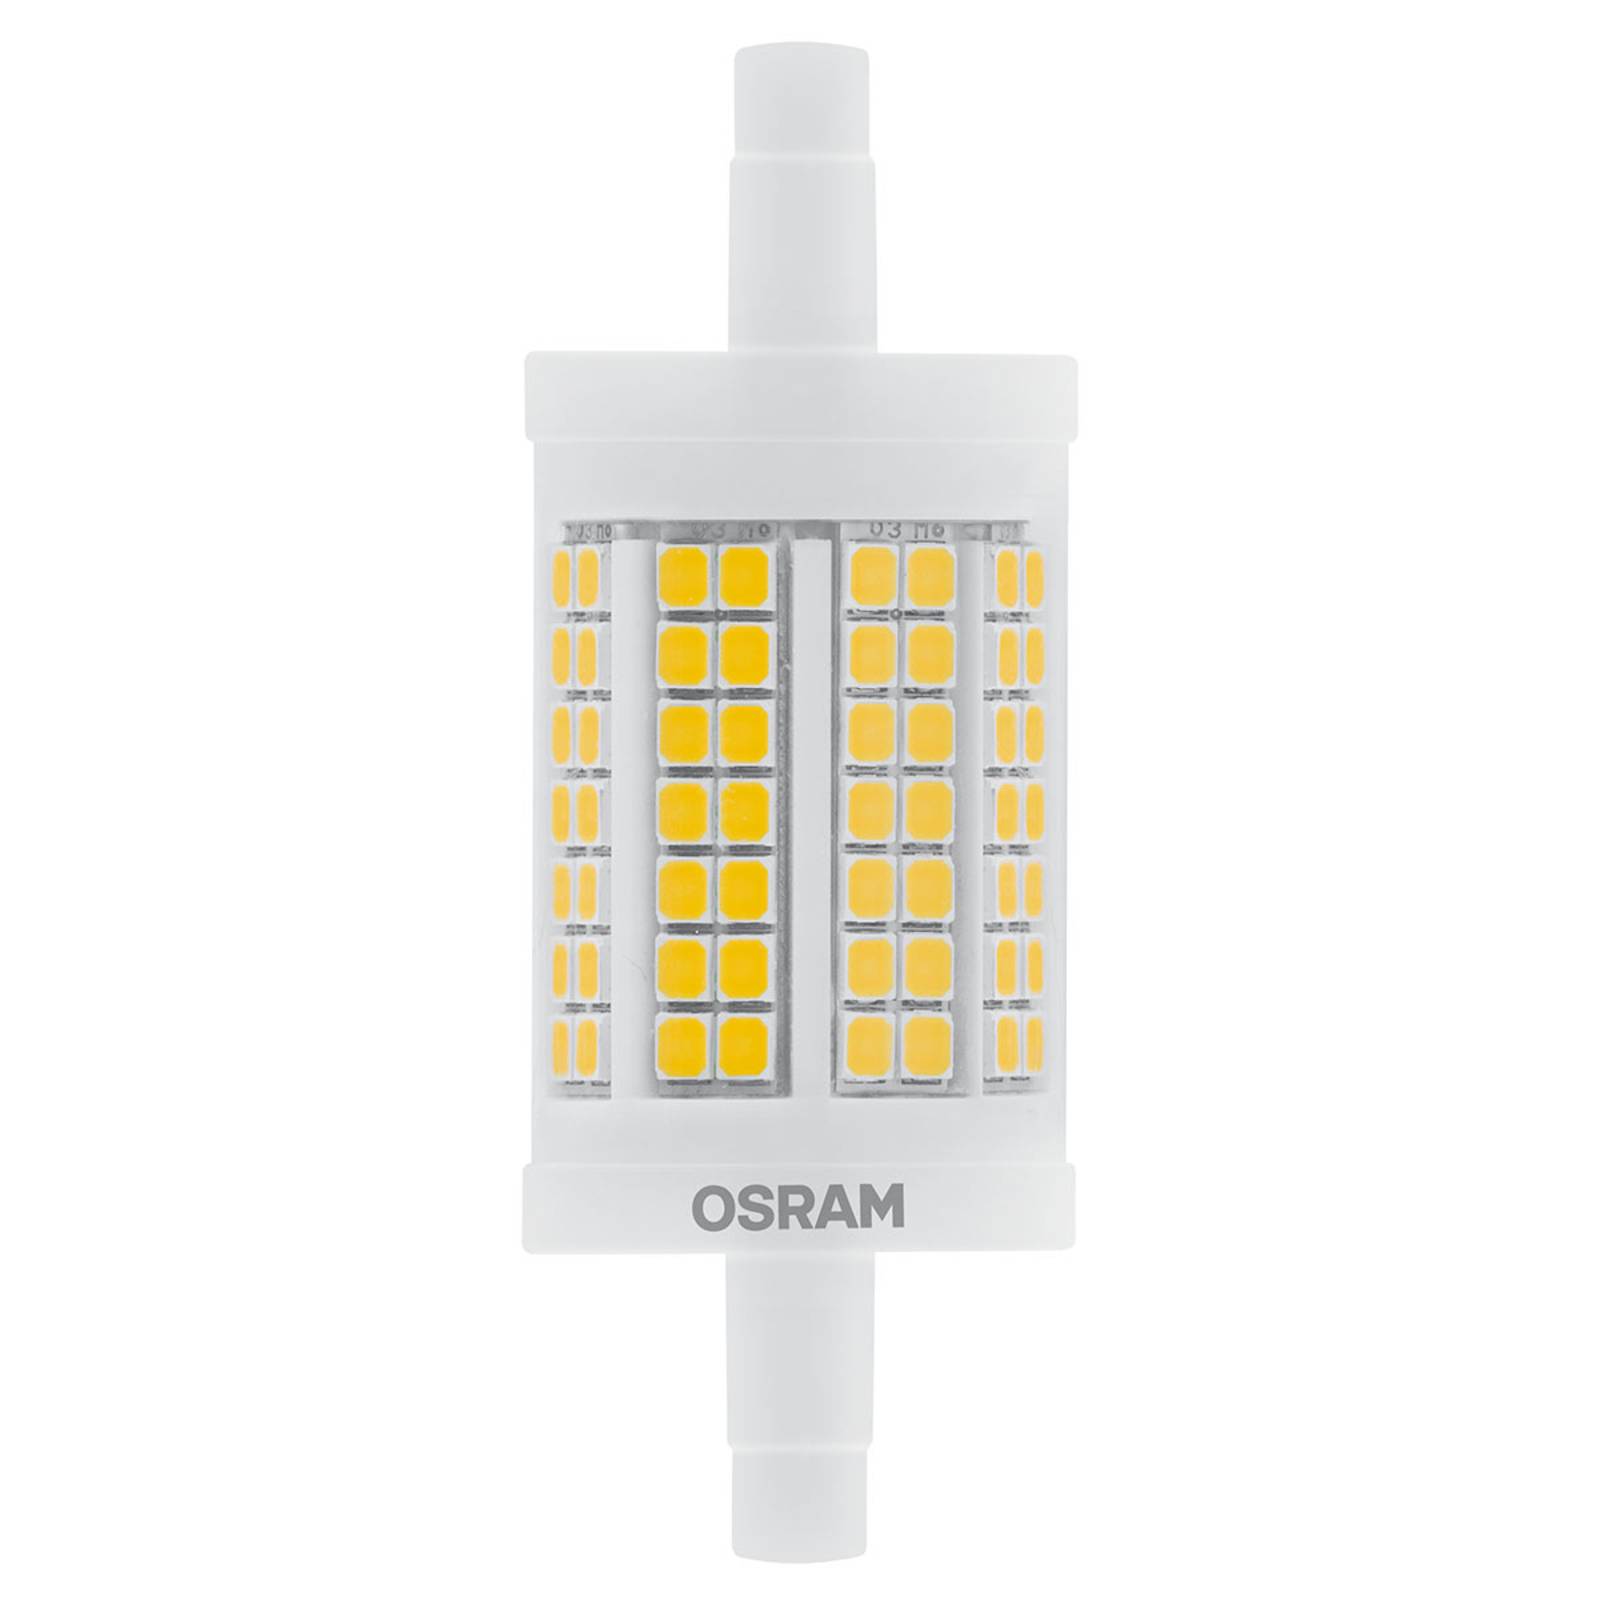 Zdjęcia - Żarówka Osram  prętowa LED R7s 12W, ciepła biel 